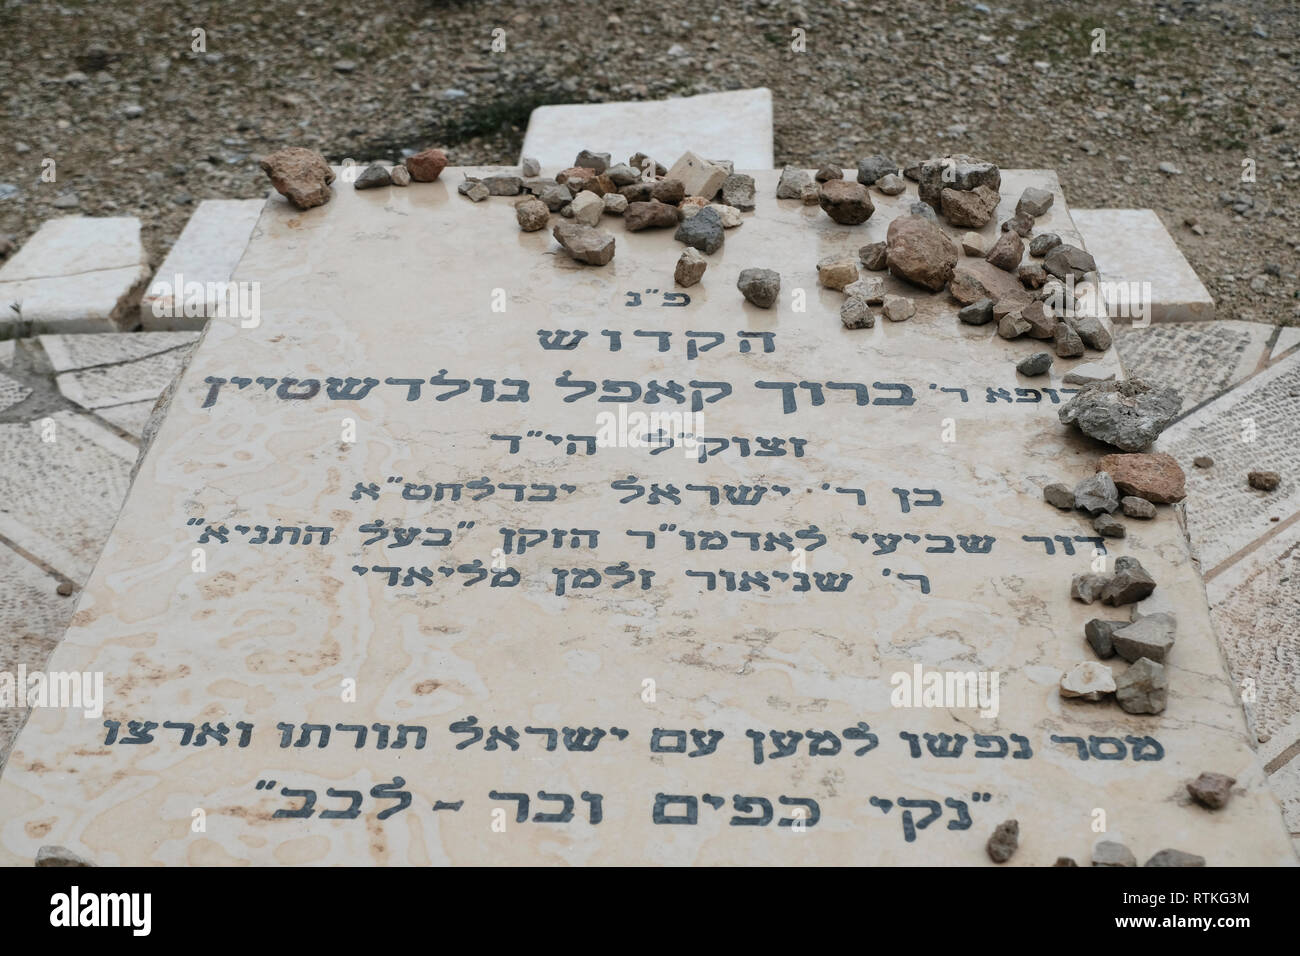 Pietra tombale di Baruch Goldstein, che era un medico American-Israeli, religioso estremista, che ha perpetrato il 1994 Grotta dei patriarchi il massacro di Hebron, uccidendo 29 musulmana palestinese adoratori. Egli è stato picchiato a morte dai superstiti del massacro. Situato nel parco di Kahana nell'insediamento israeliano di Kiryat Arba o Qiryat Arba nei pressi di Hebron Cisgiordania Foto Stock